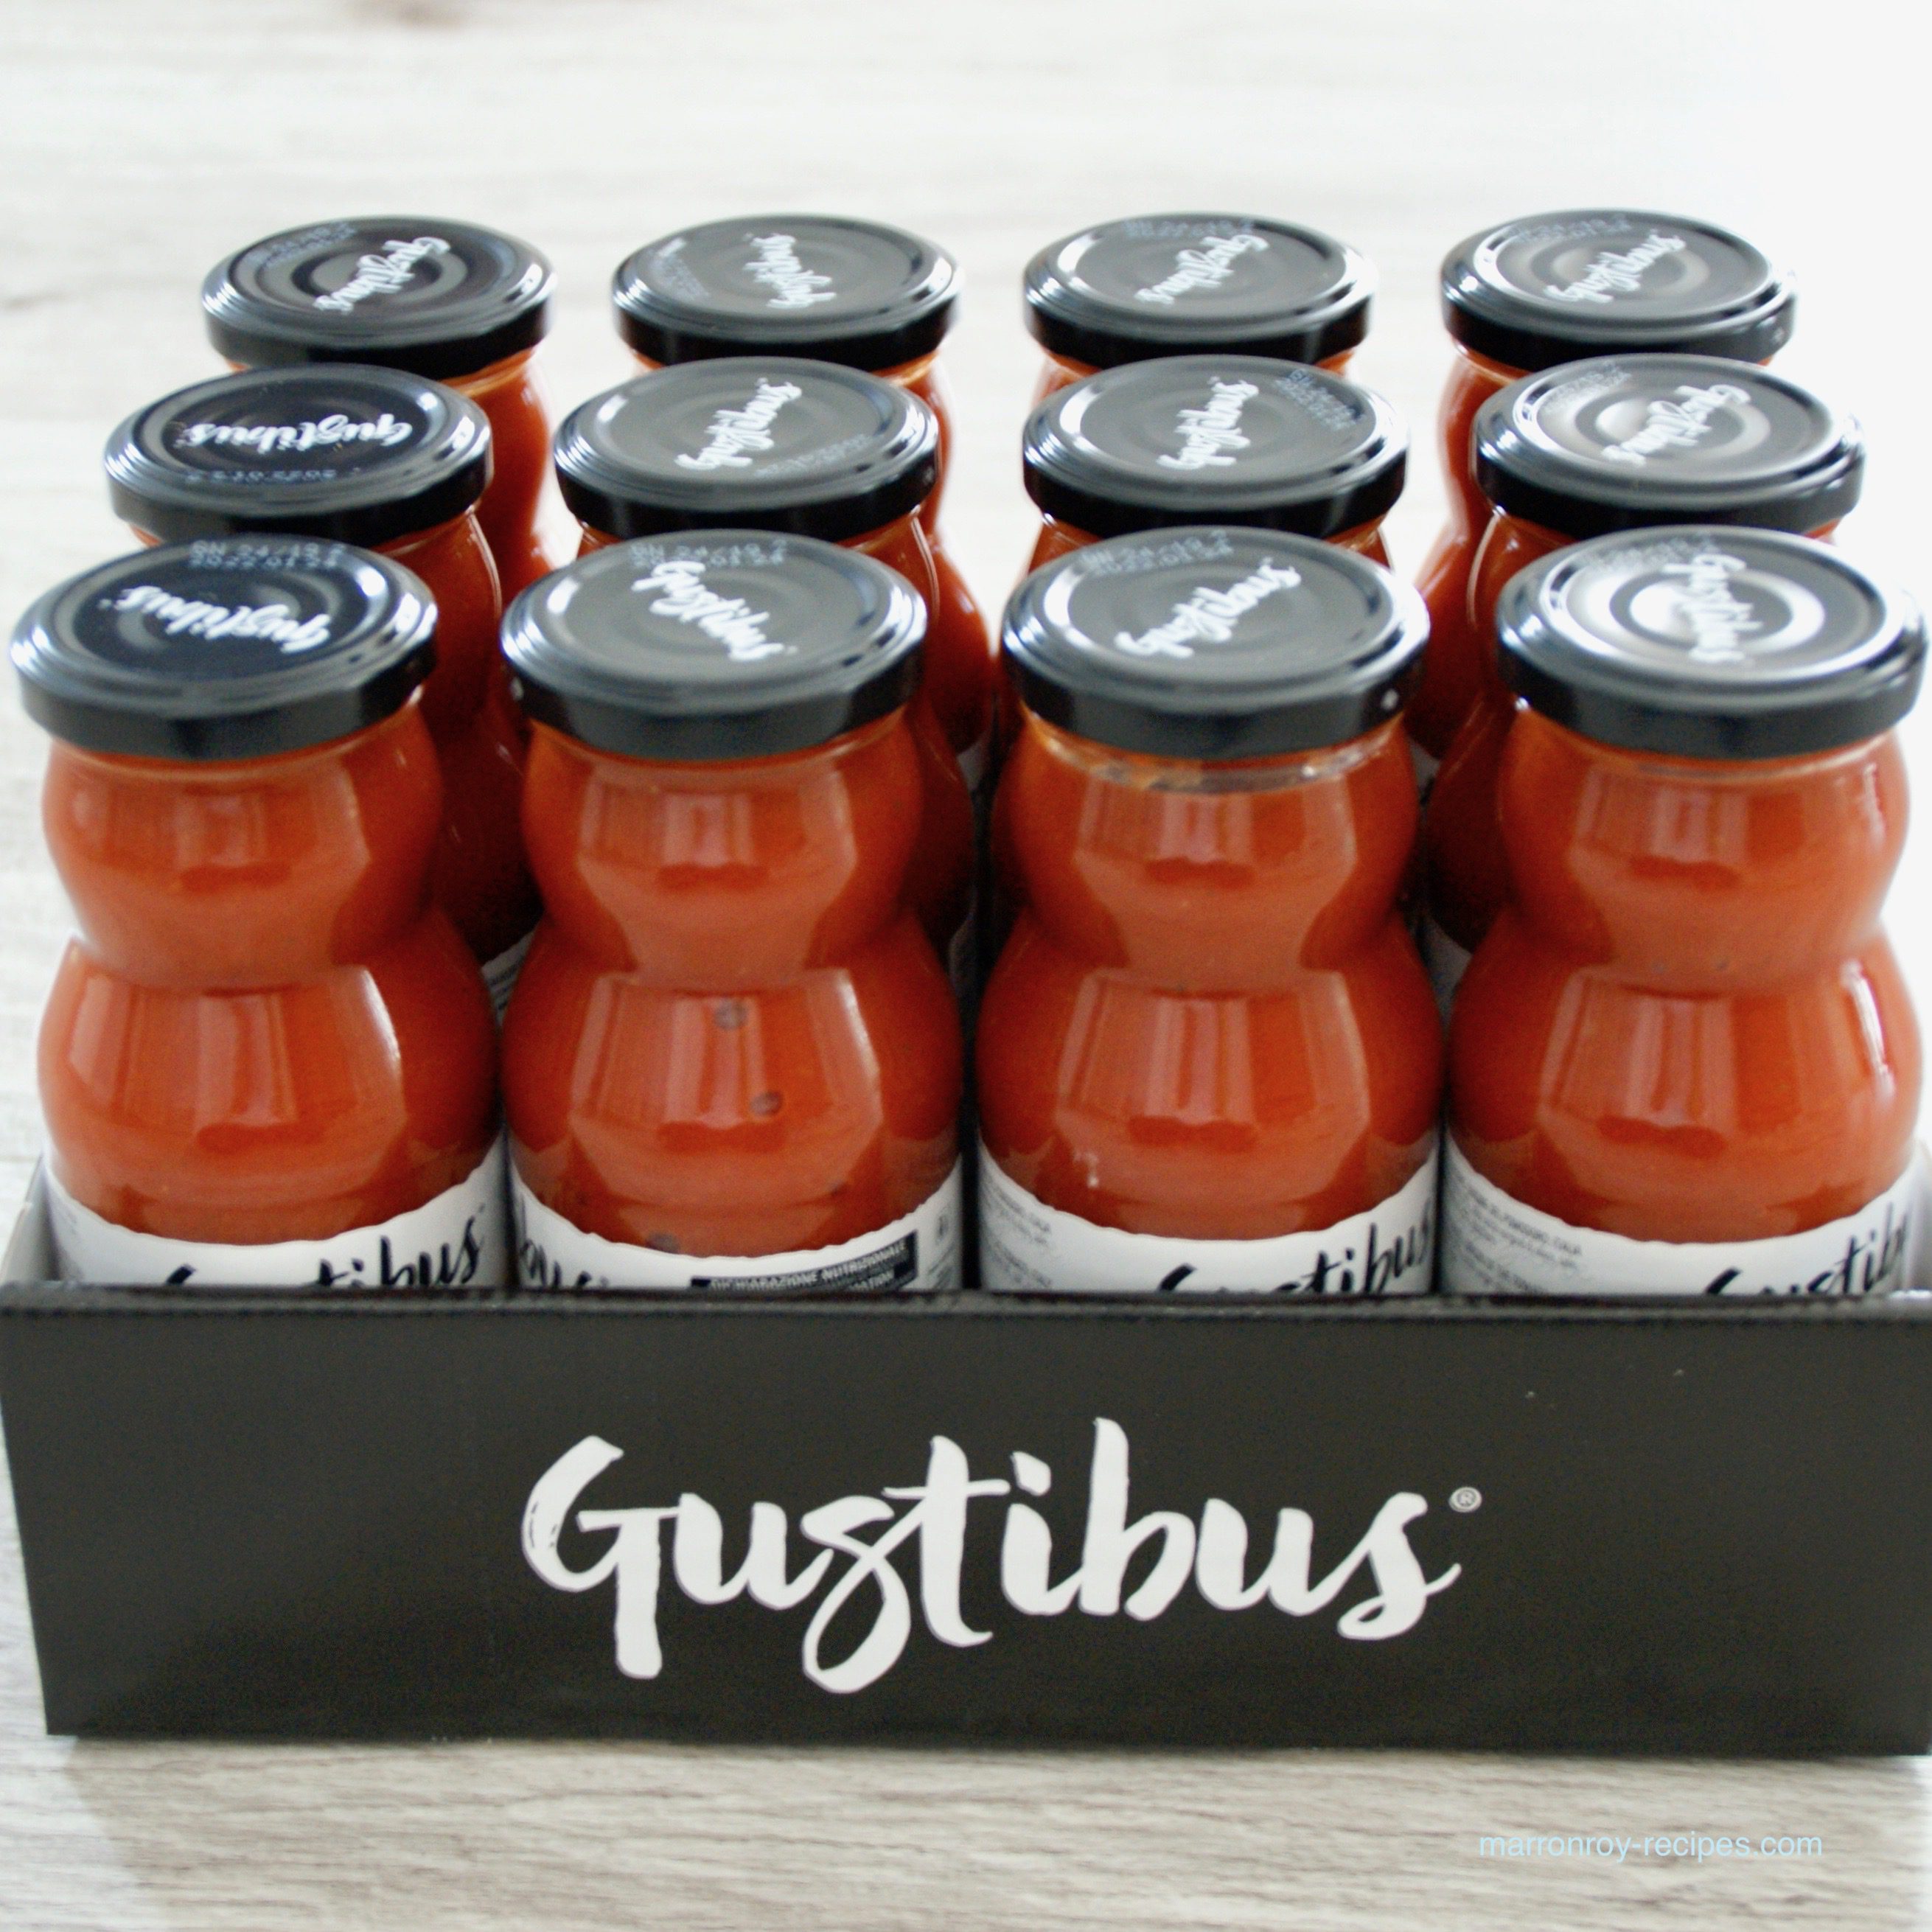 コストコの新しいトマトソース“Gustibus チェリートマトソース”